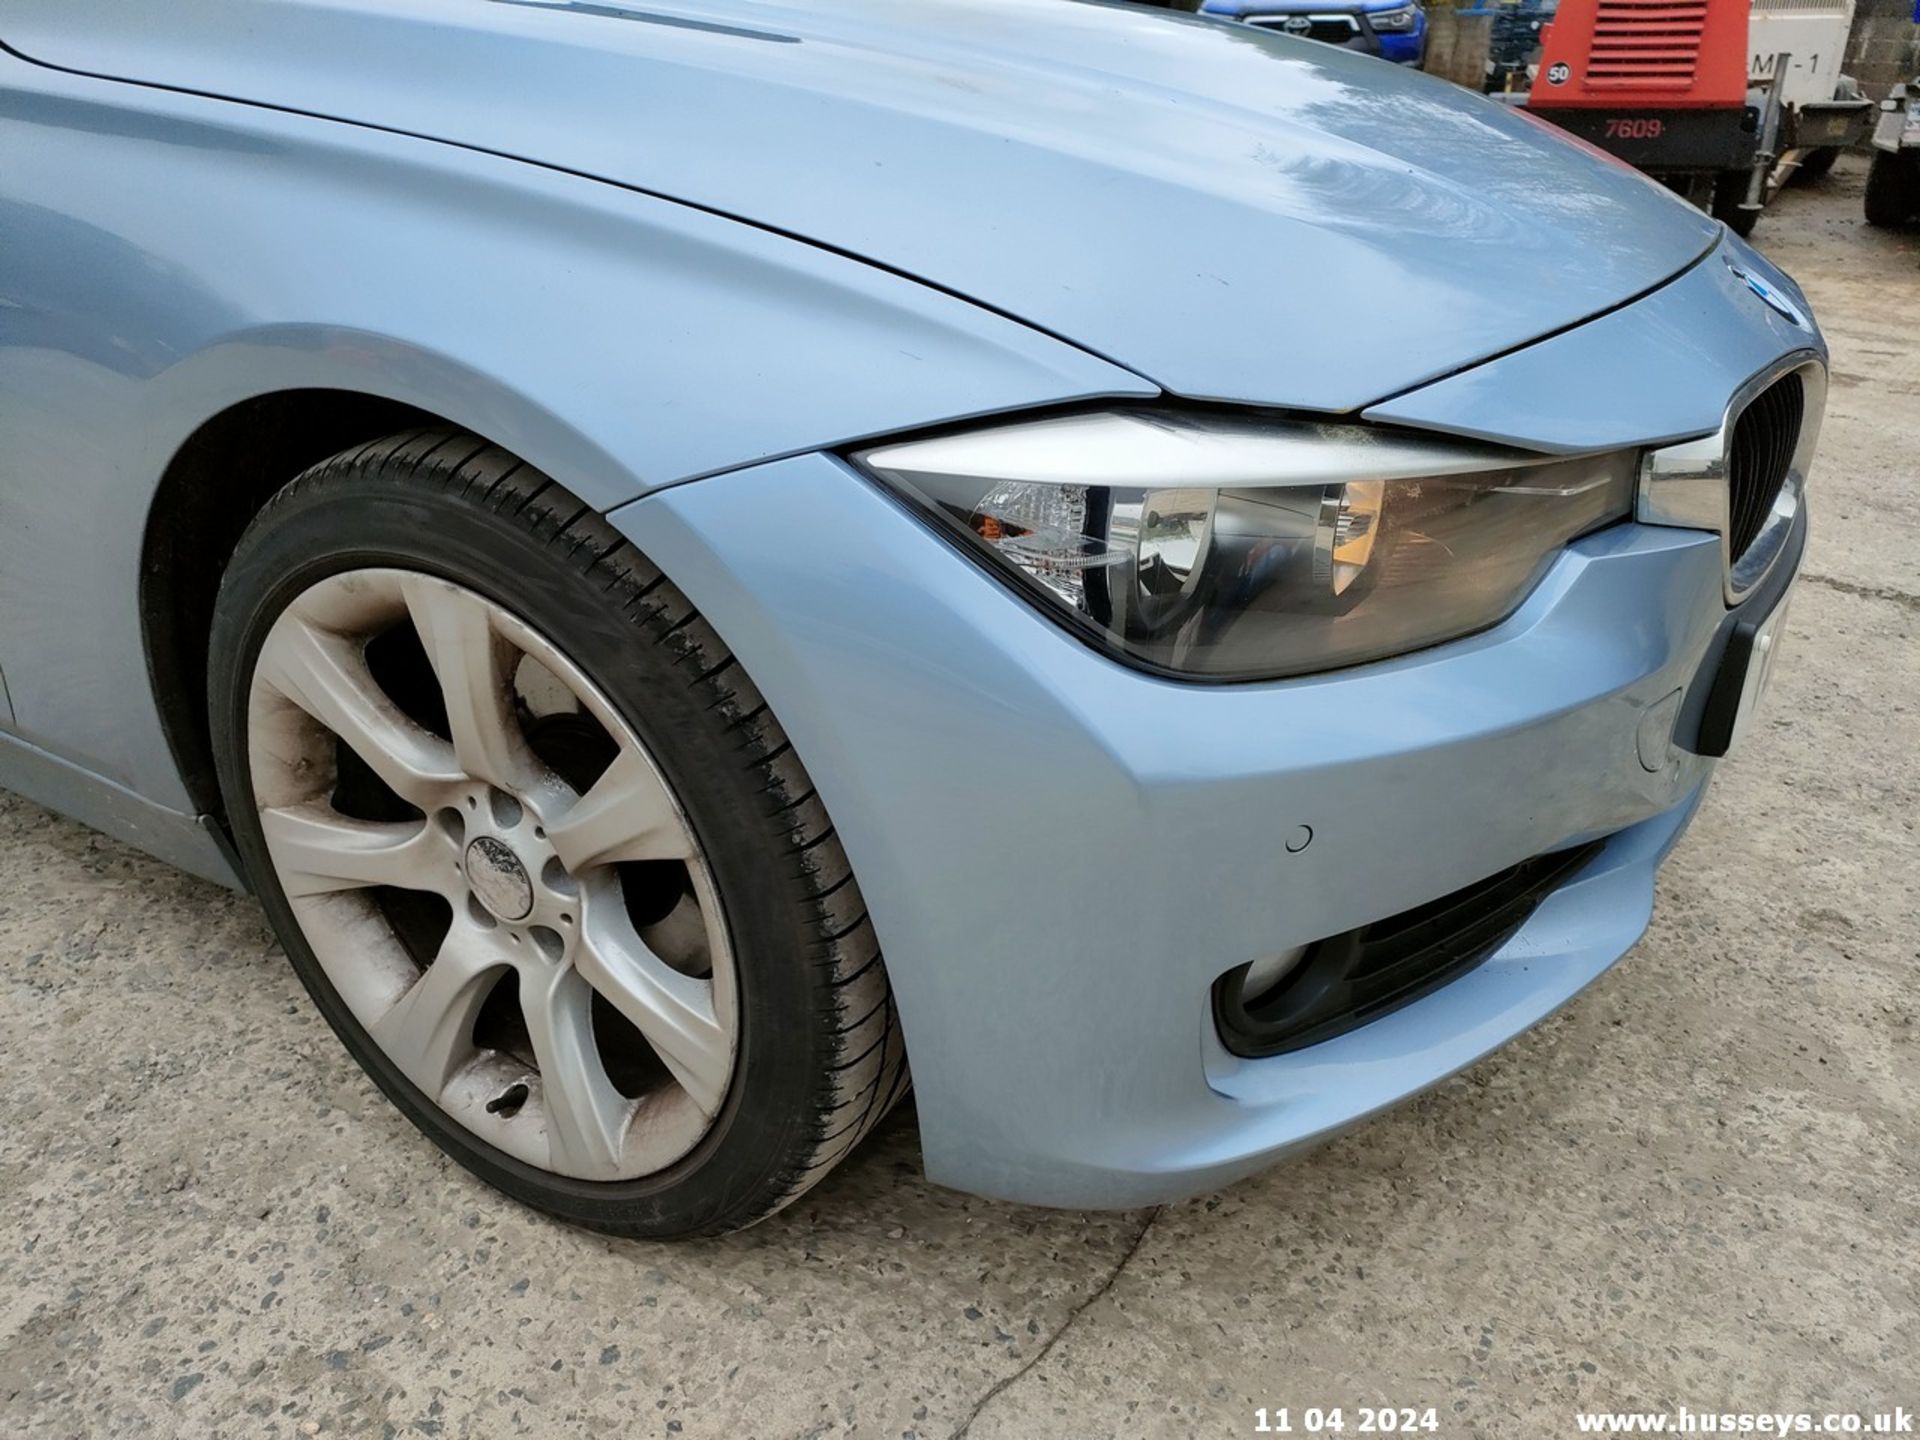 12/62 BMW 320D SE TOURING - 1995cc 5dr Estate (Blue, 174k) - Image 5 of 70